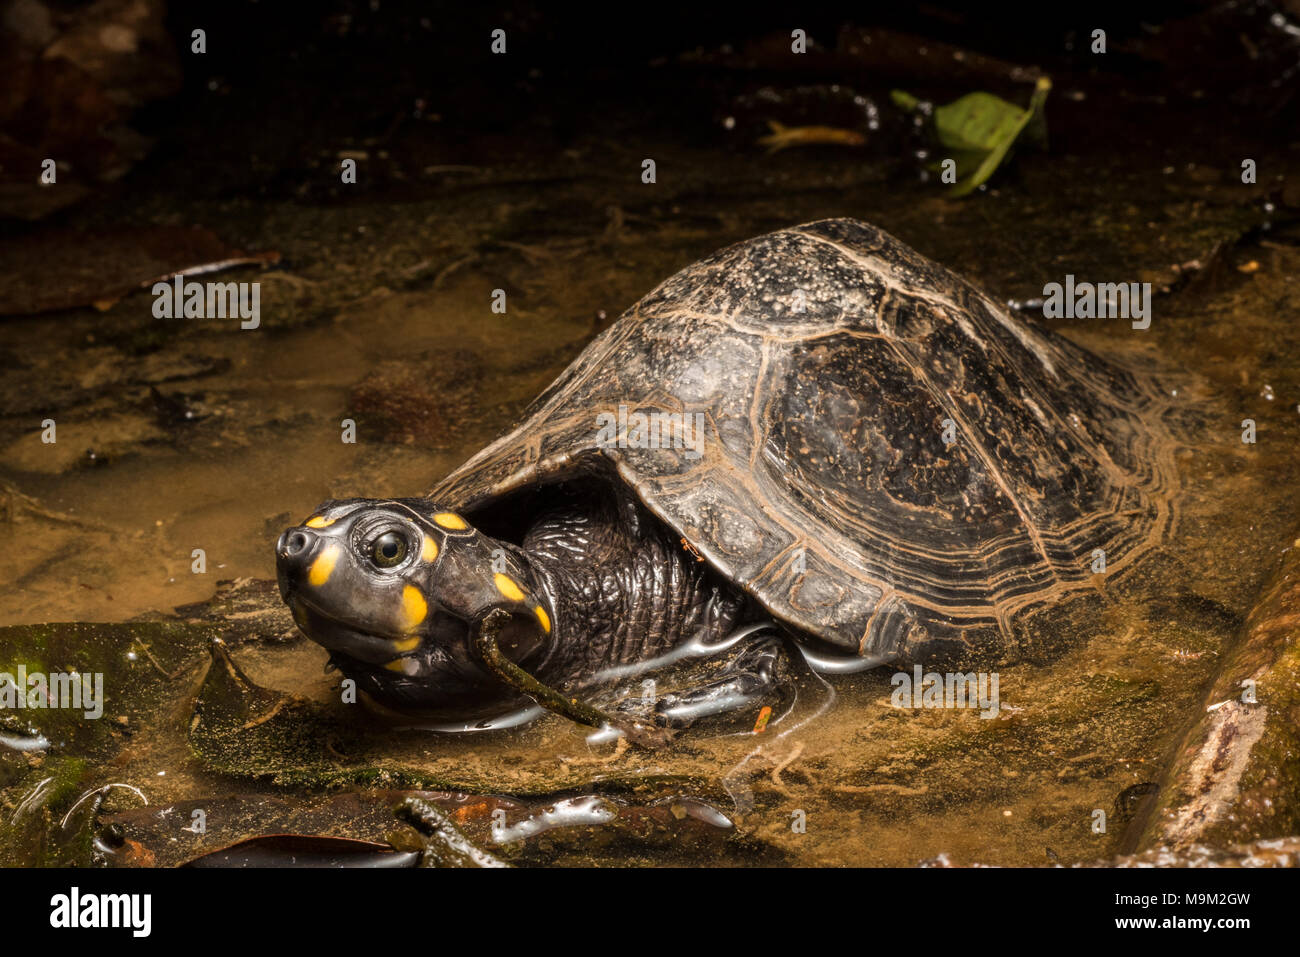 La tortue d'eau douce menacée, le sideneck jaune (Podocnemis unifilis), originaire d'Amérique du Sud. Banque D'Images